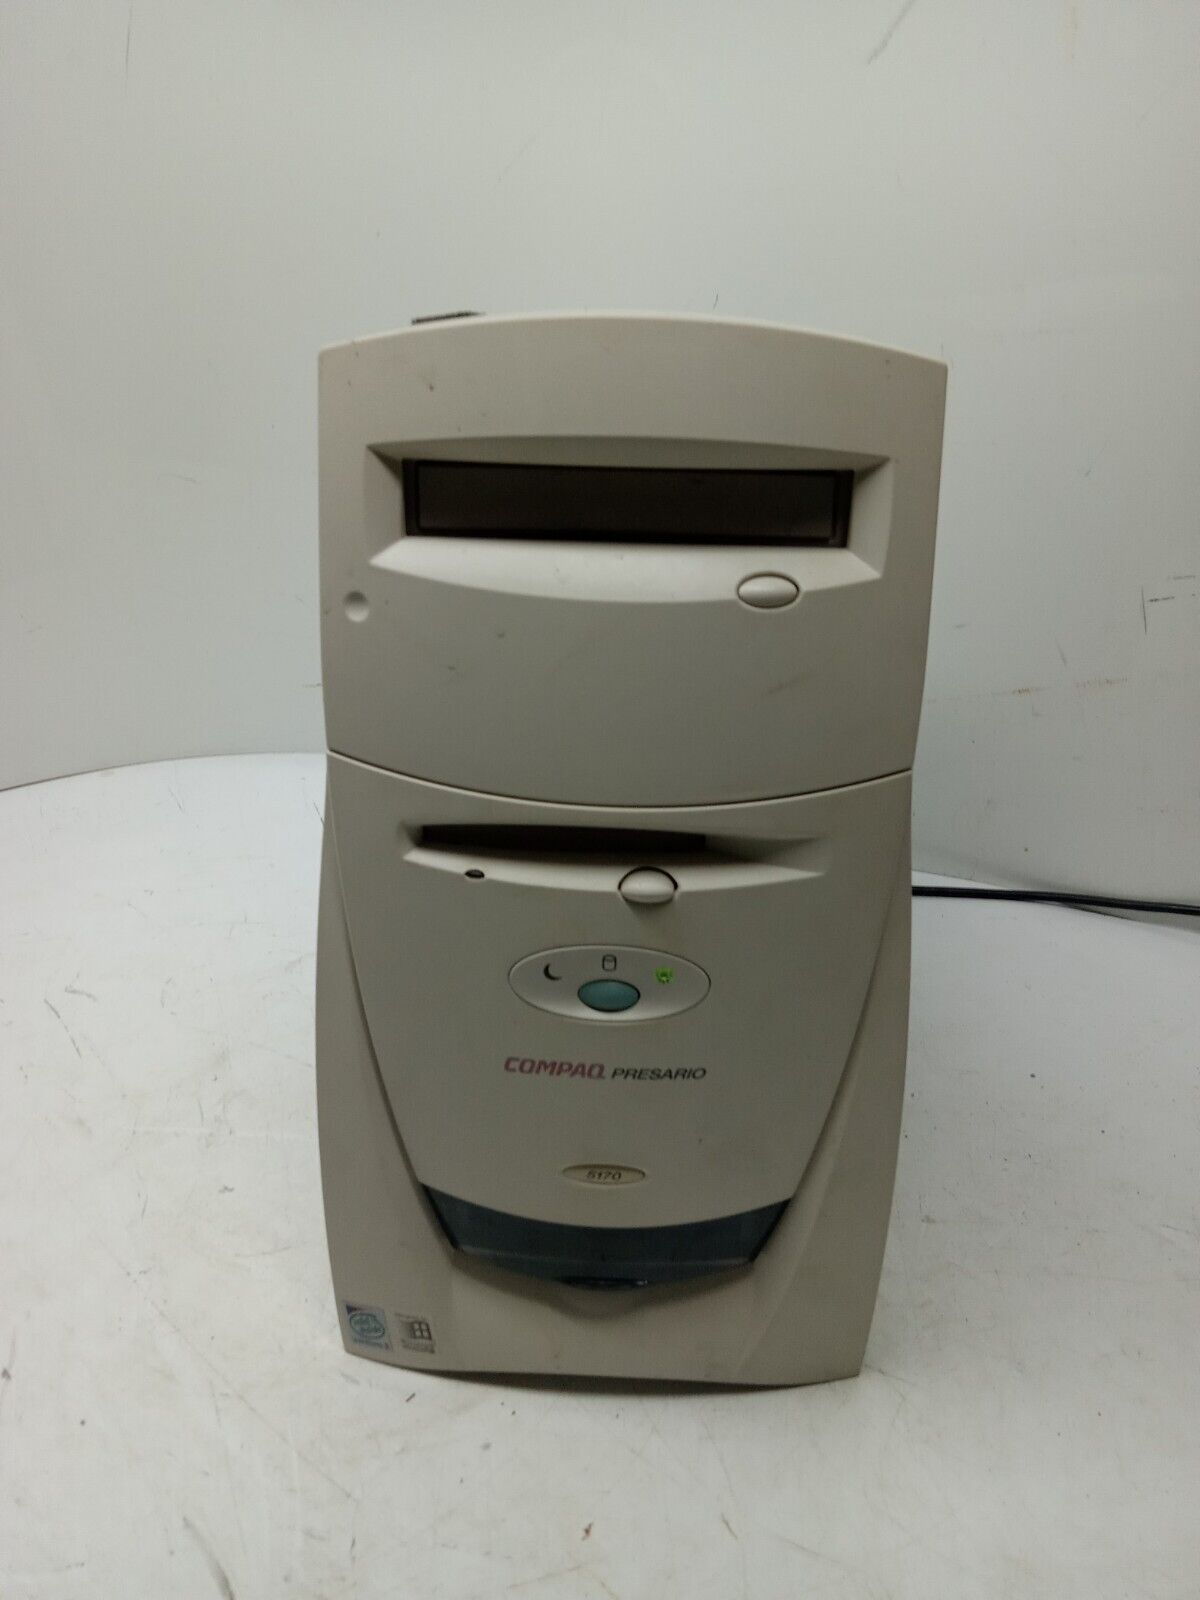 Vintage Compaq Presario 5170 Pentium II Windows 98 PC